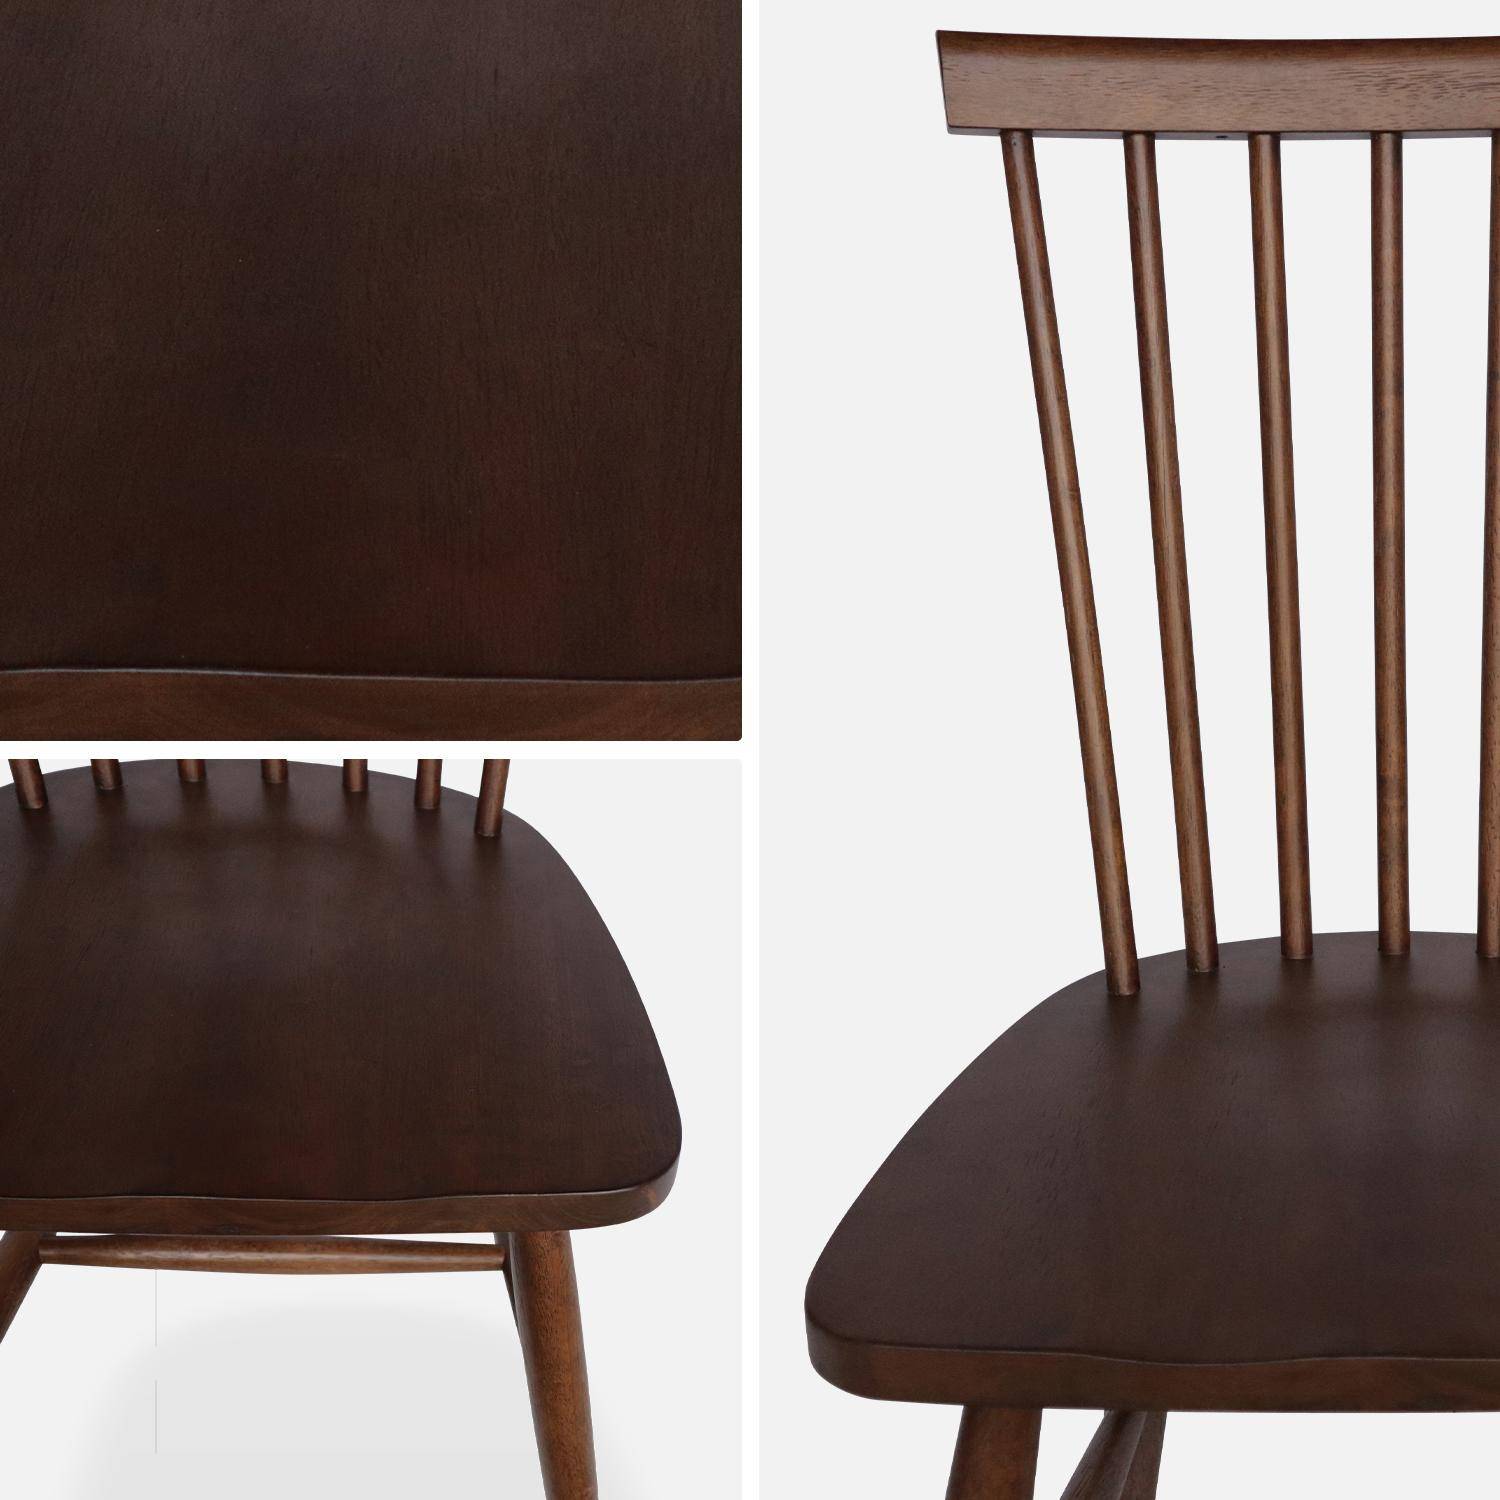 Conjunto de 2 cadeiras de nogueira com ripas de madeira de borracha, ROMIE, L 50,8 x P 44,2 x A 90cm. Photo7